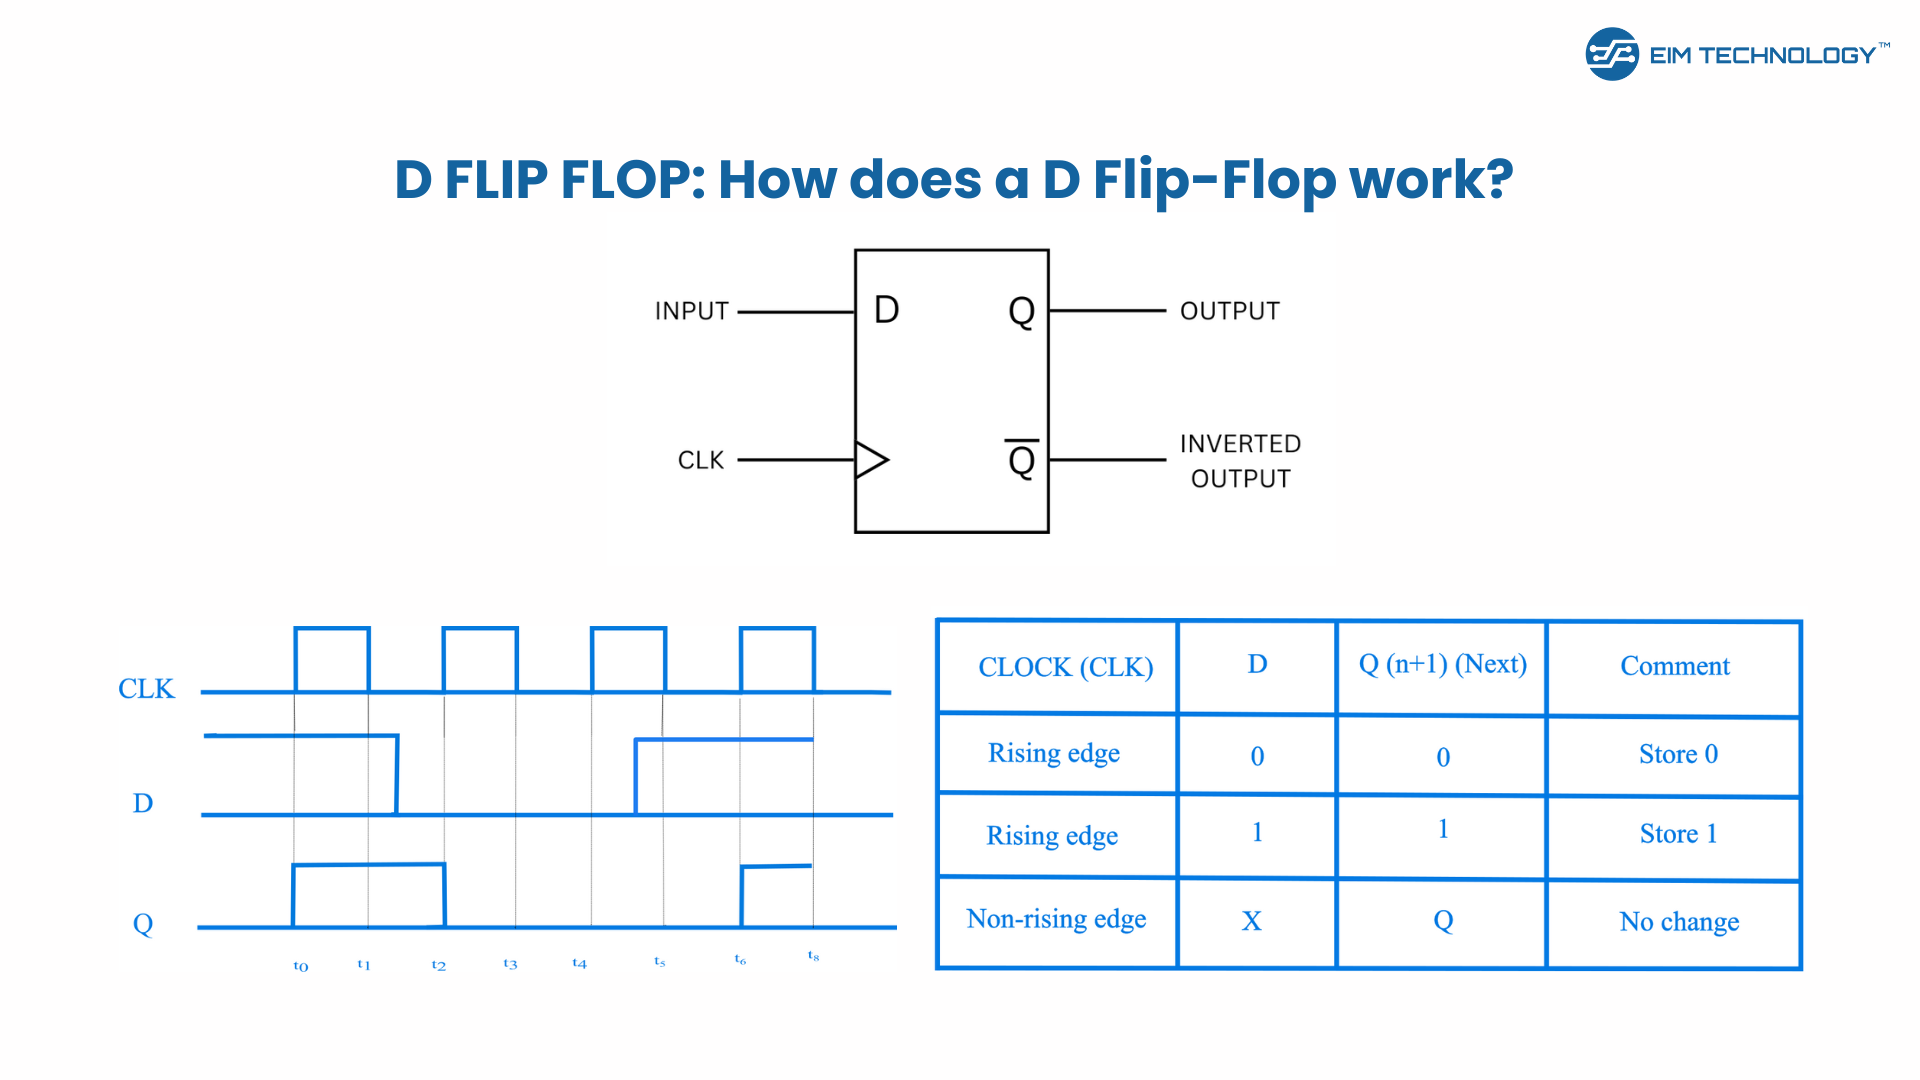 D Flip-Flop: How does a D Flip-Flop Work?